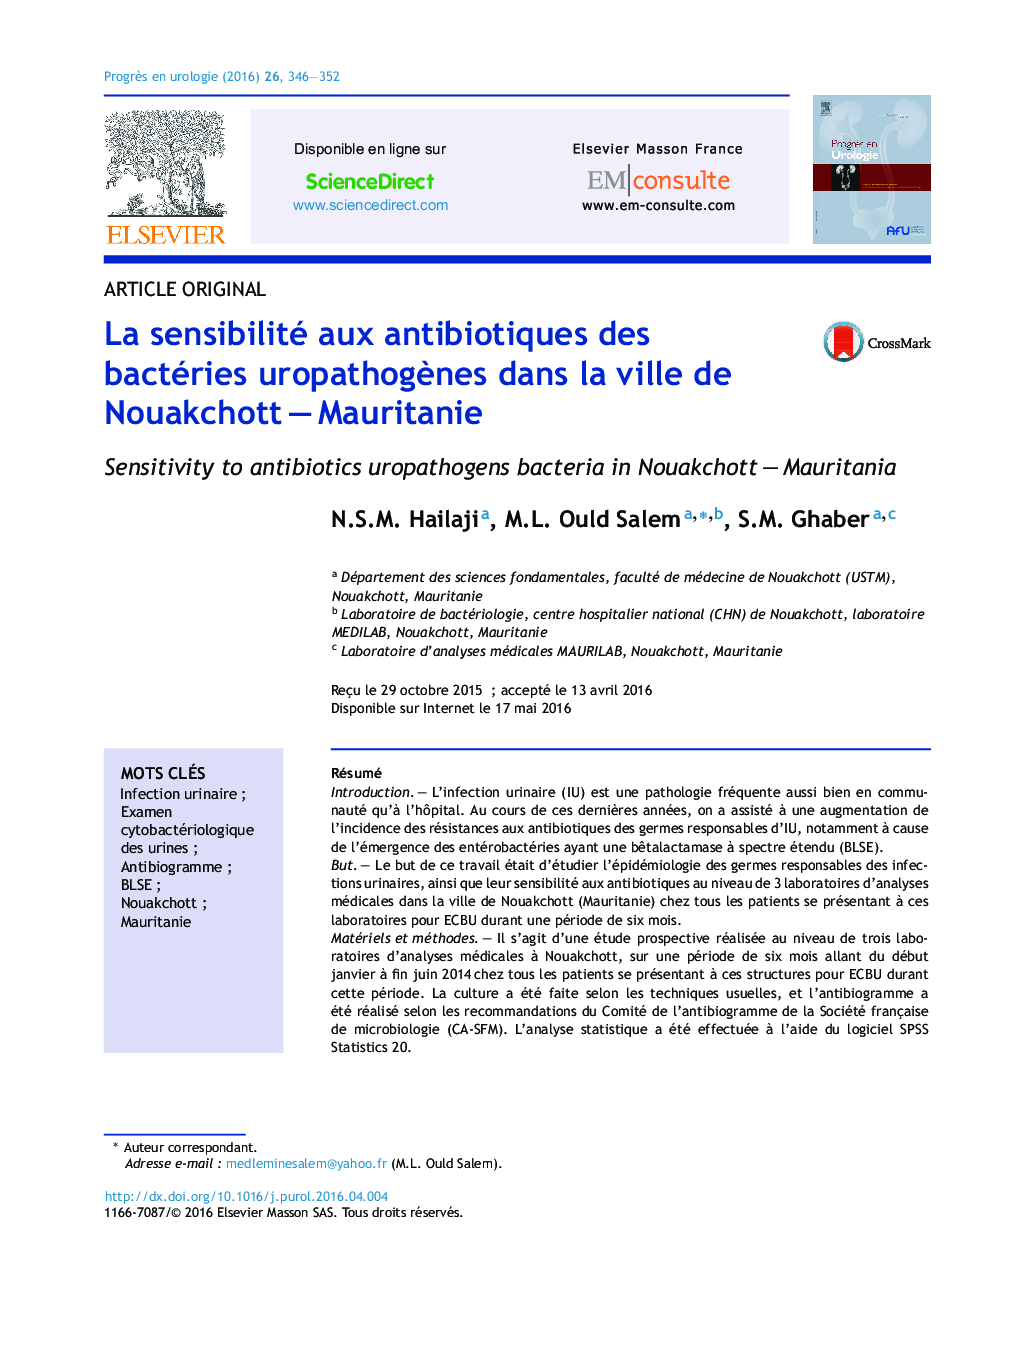 La sensibilité aux antibiotiques des bactéries uropathogènes dans la ville de Nouakchott – Mauritanie